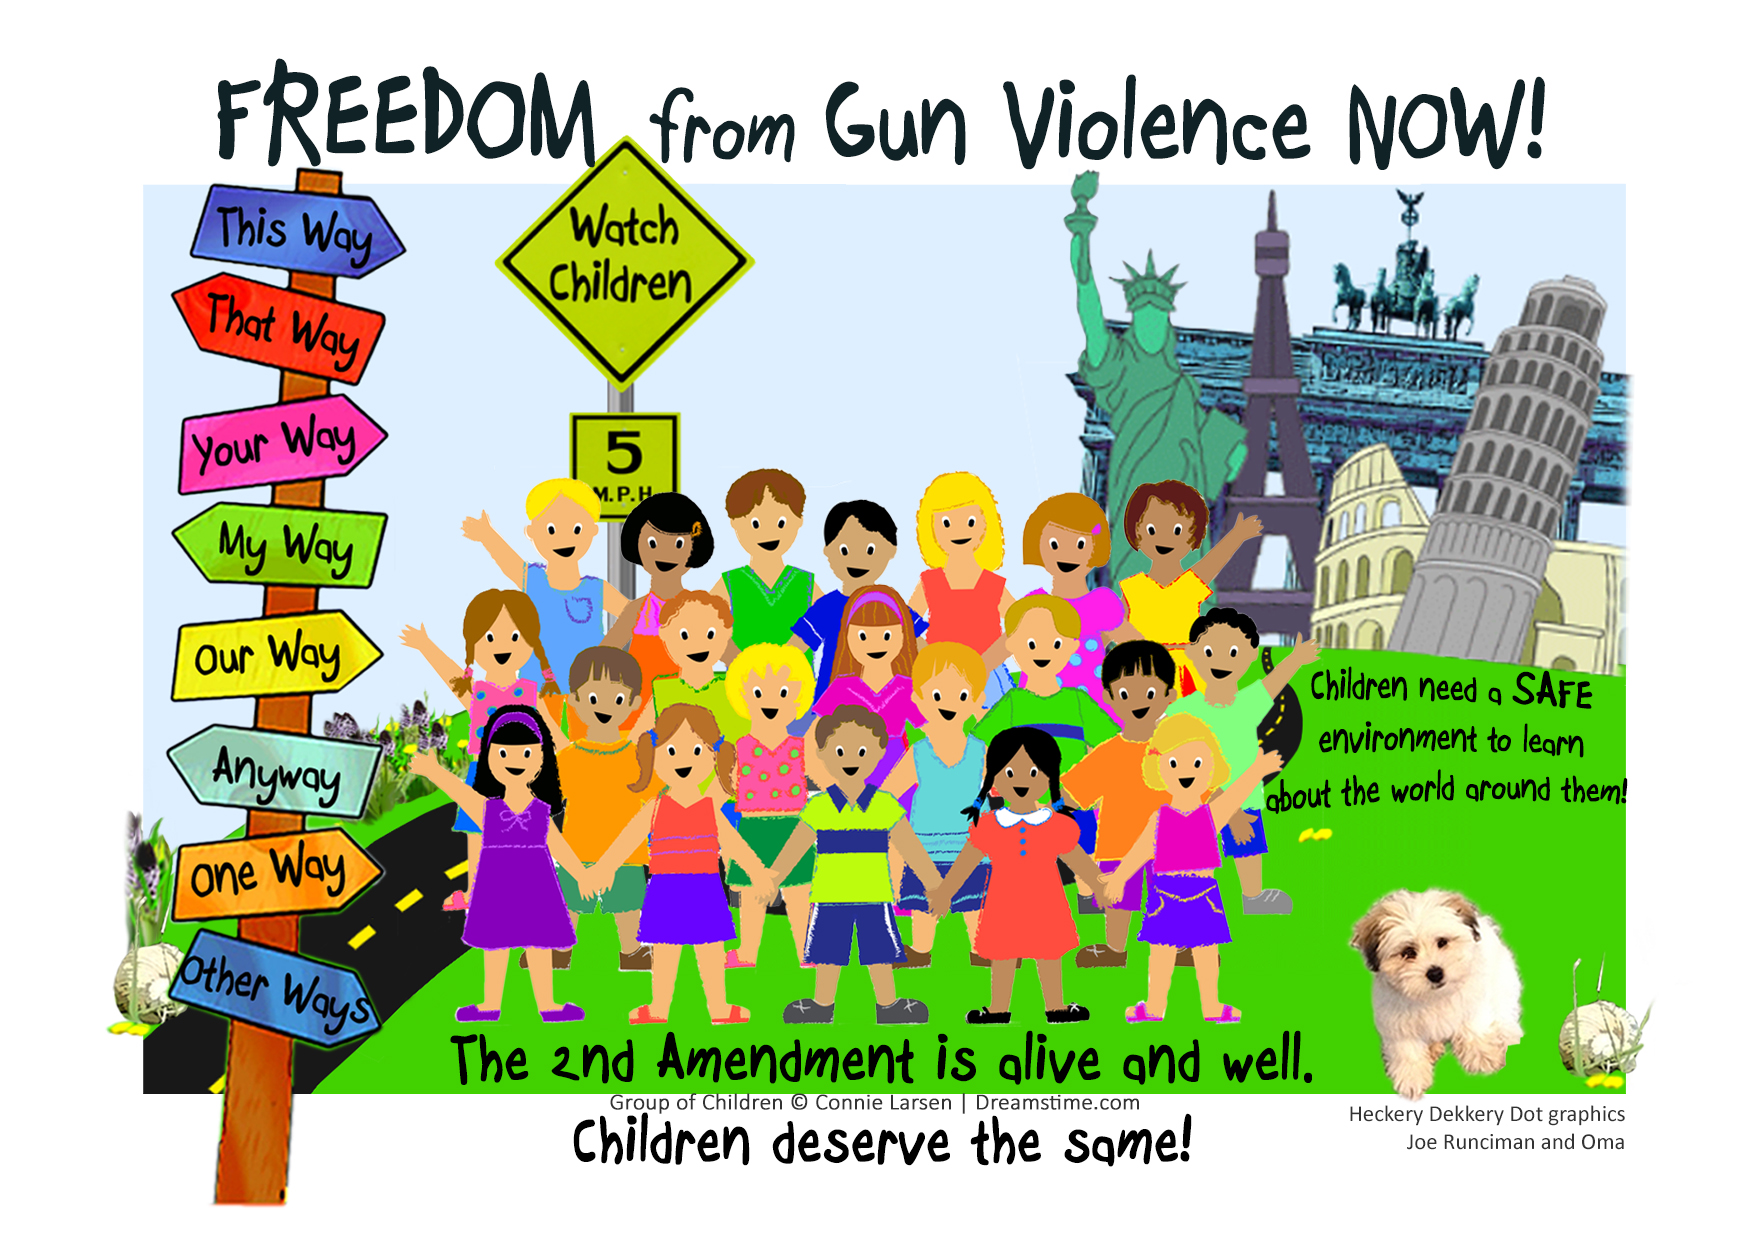 Heckery Dekkery Kids are against Gun Violence!